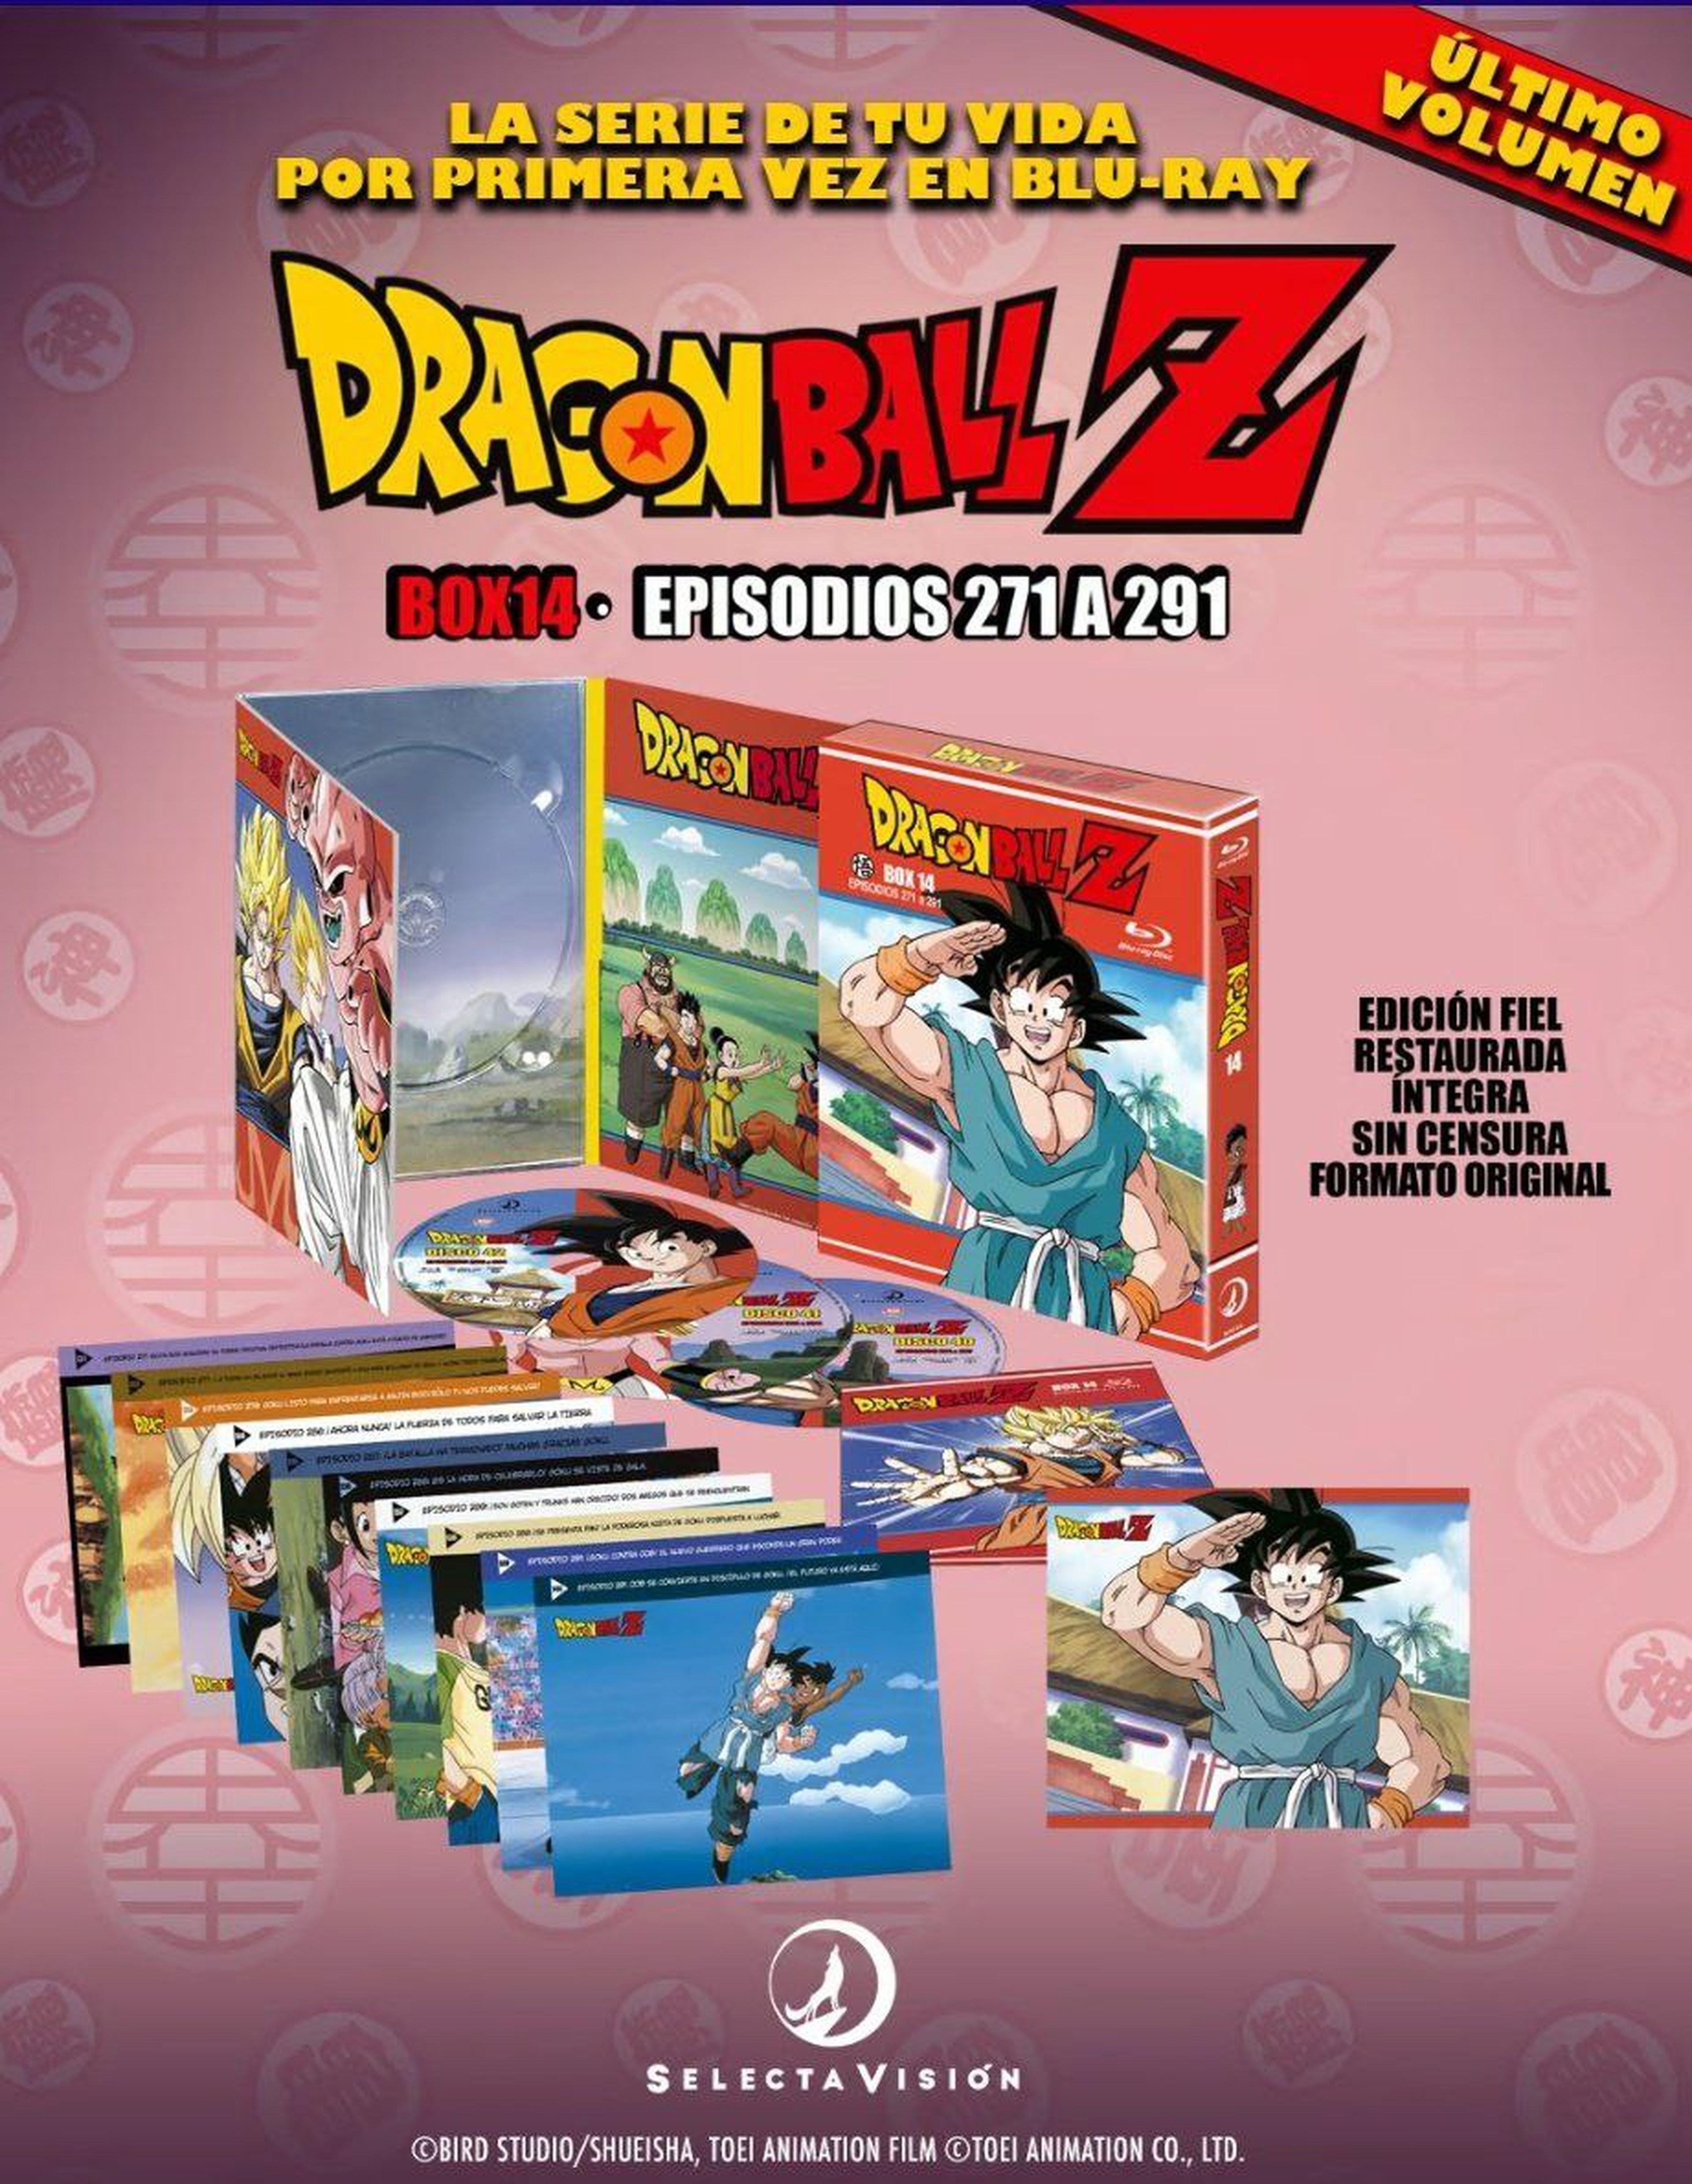 Desvelada la portada y fecha de lanzamiento del último volumen de Dragon Ball Z en Blu-ray. ¡El fin de una era!